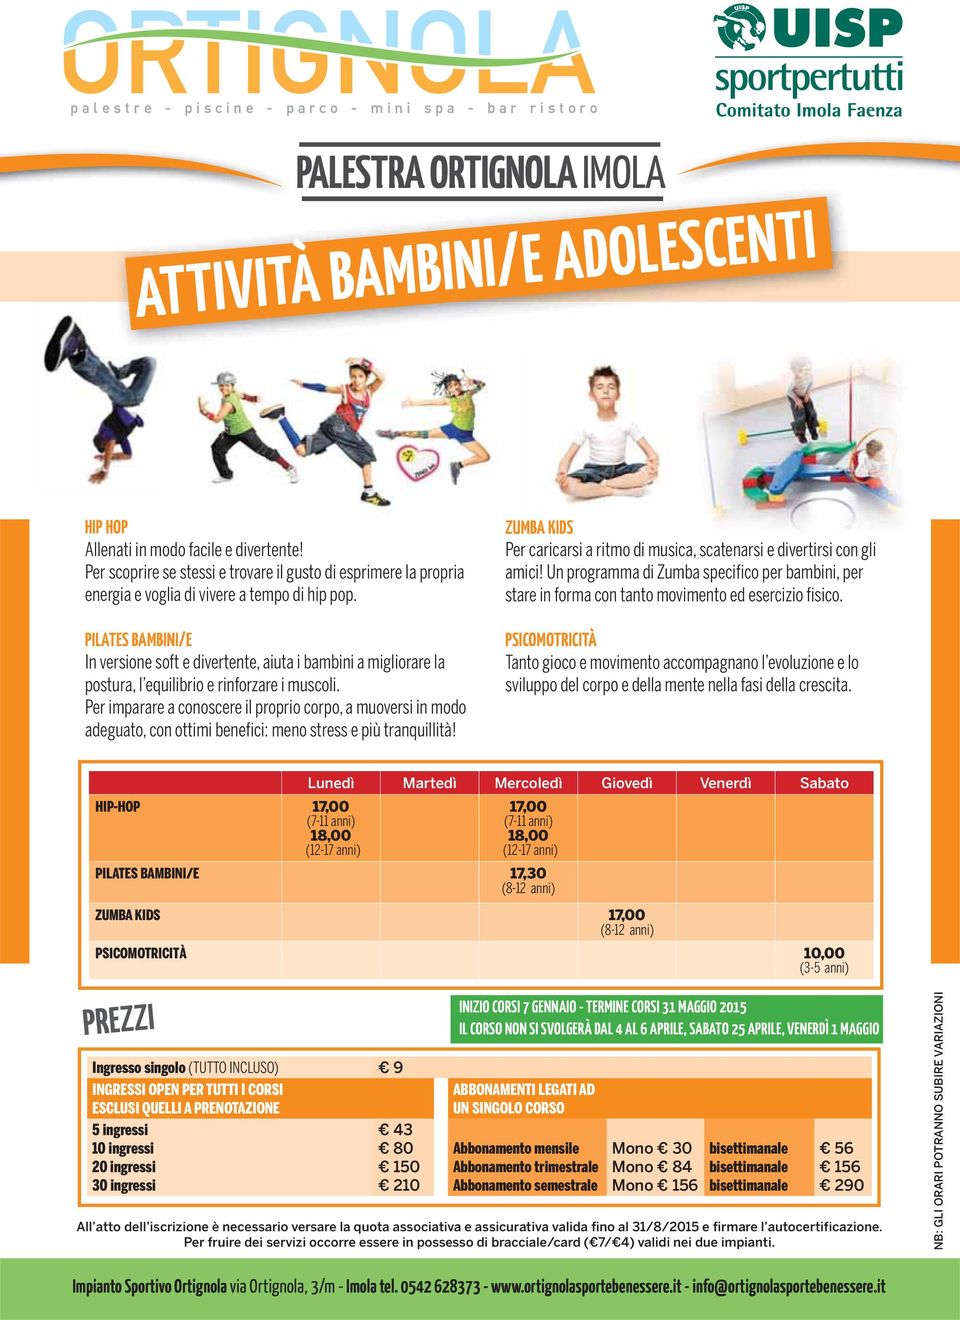 PILATS BAMBINI/ In versione soft e divertente, aiuta i bambini a migliorare la postura, l equilibrio e rinforzare i muscoli.